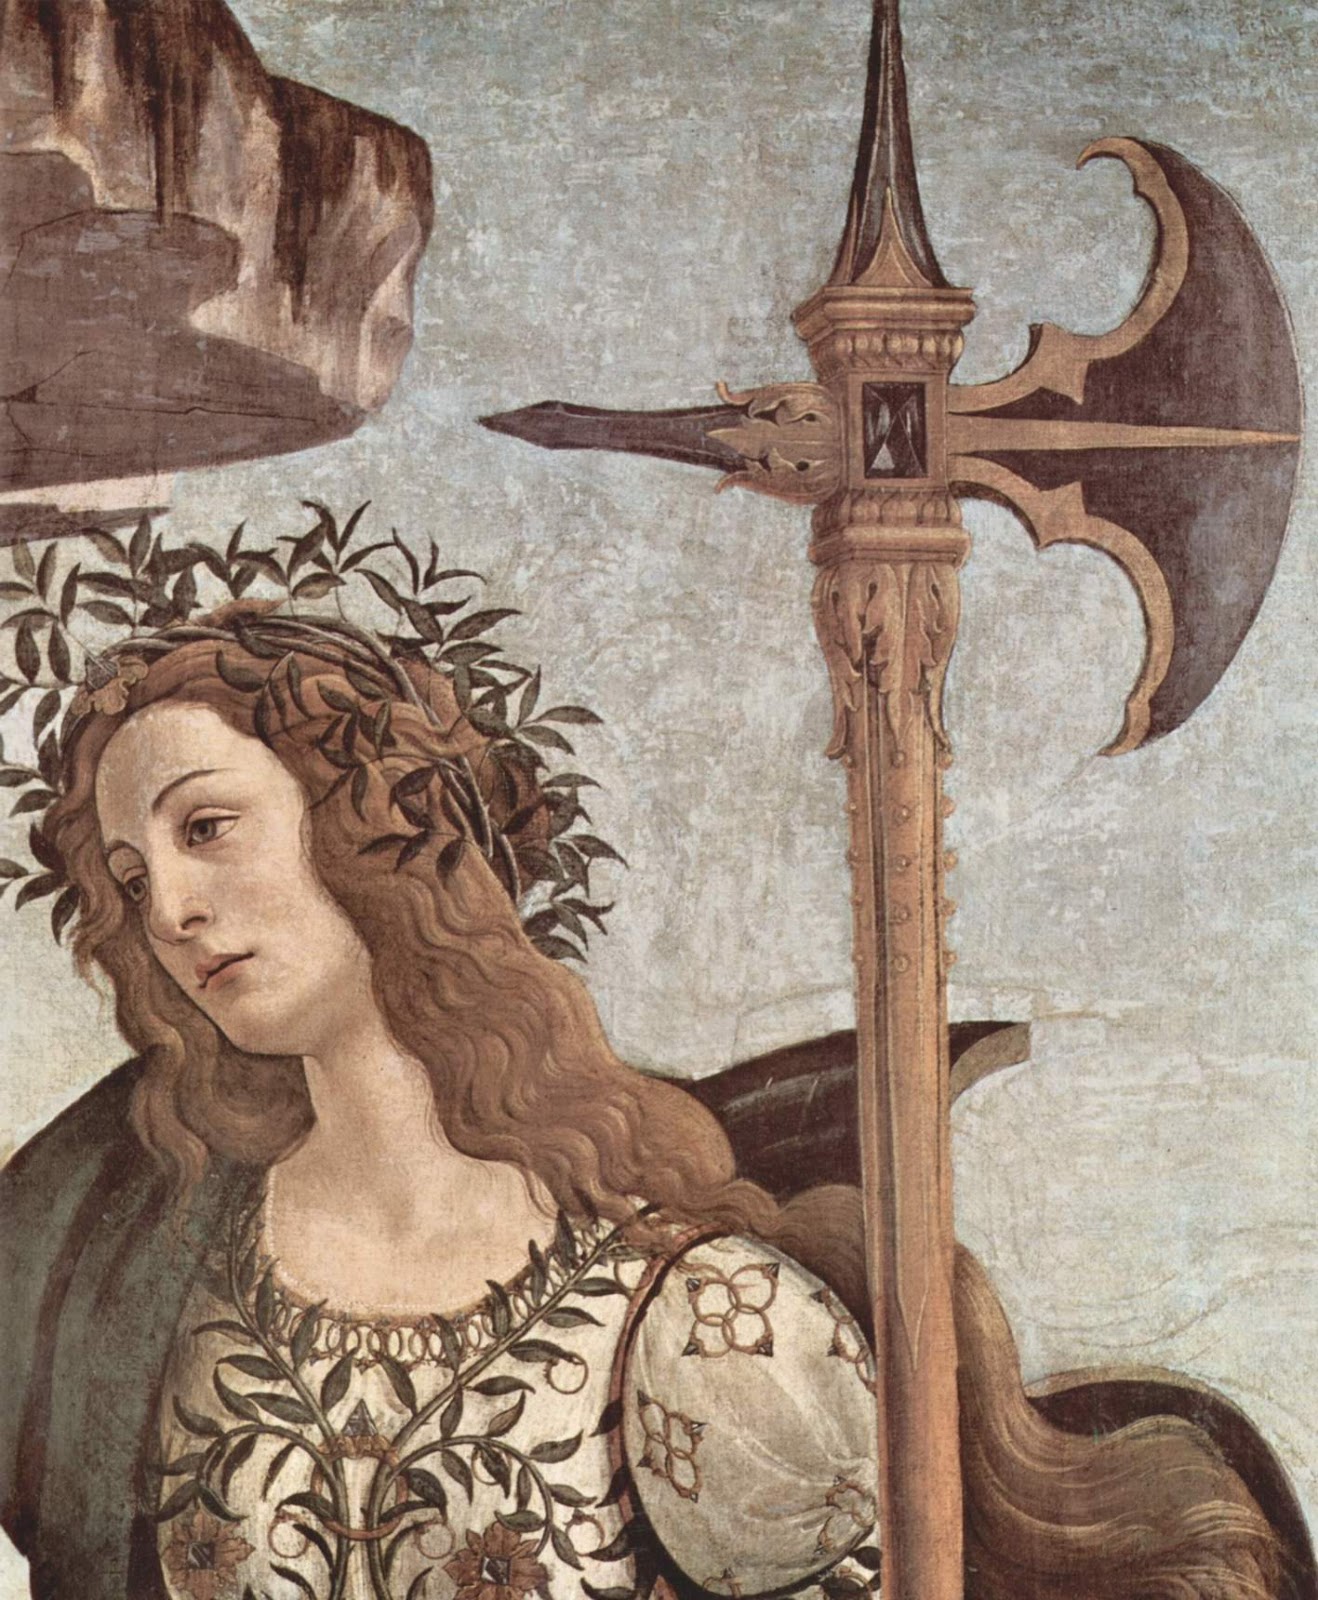 Sandro+Botticelli-1445-1510 (159).jpg